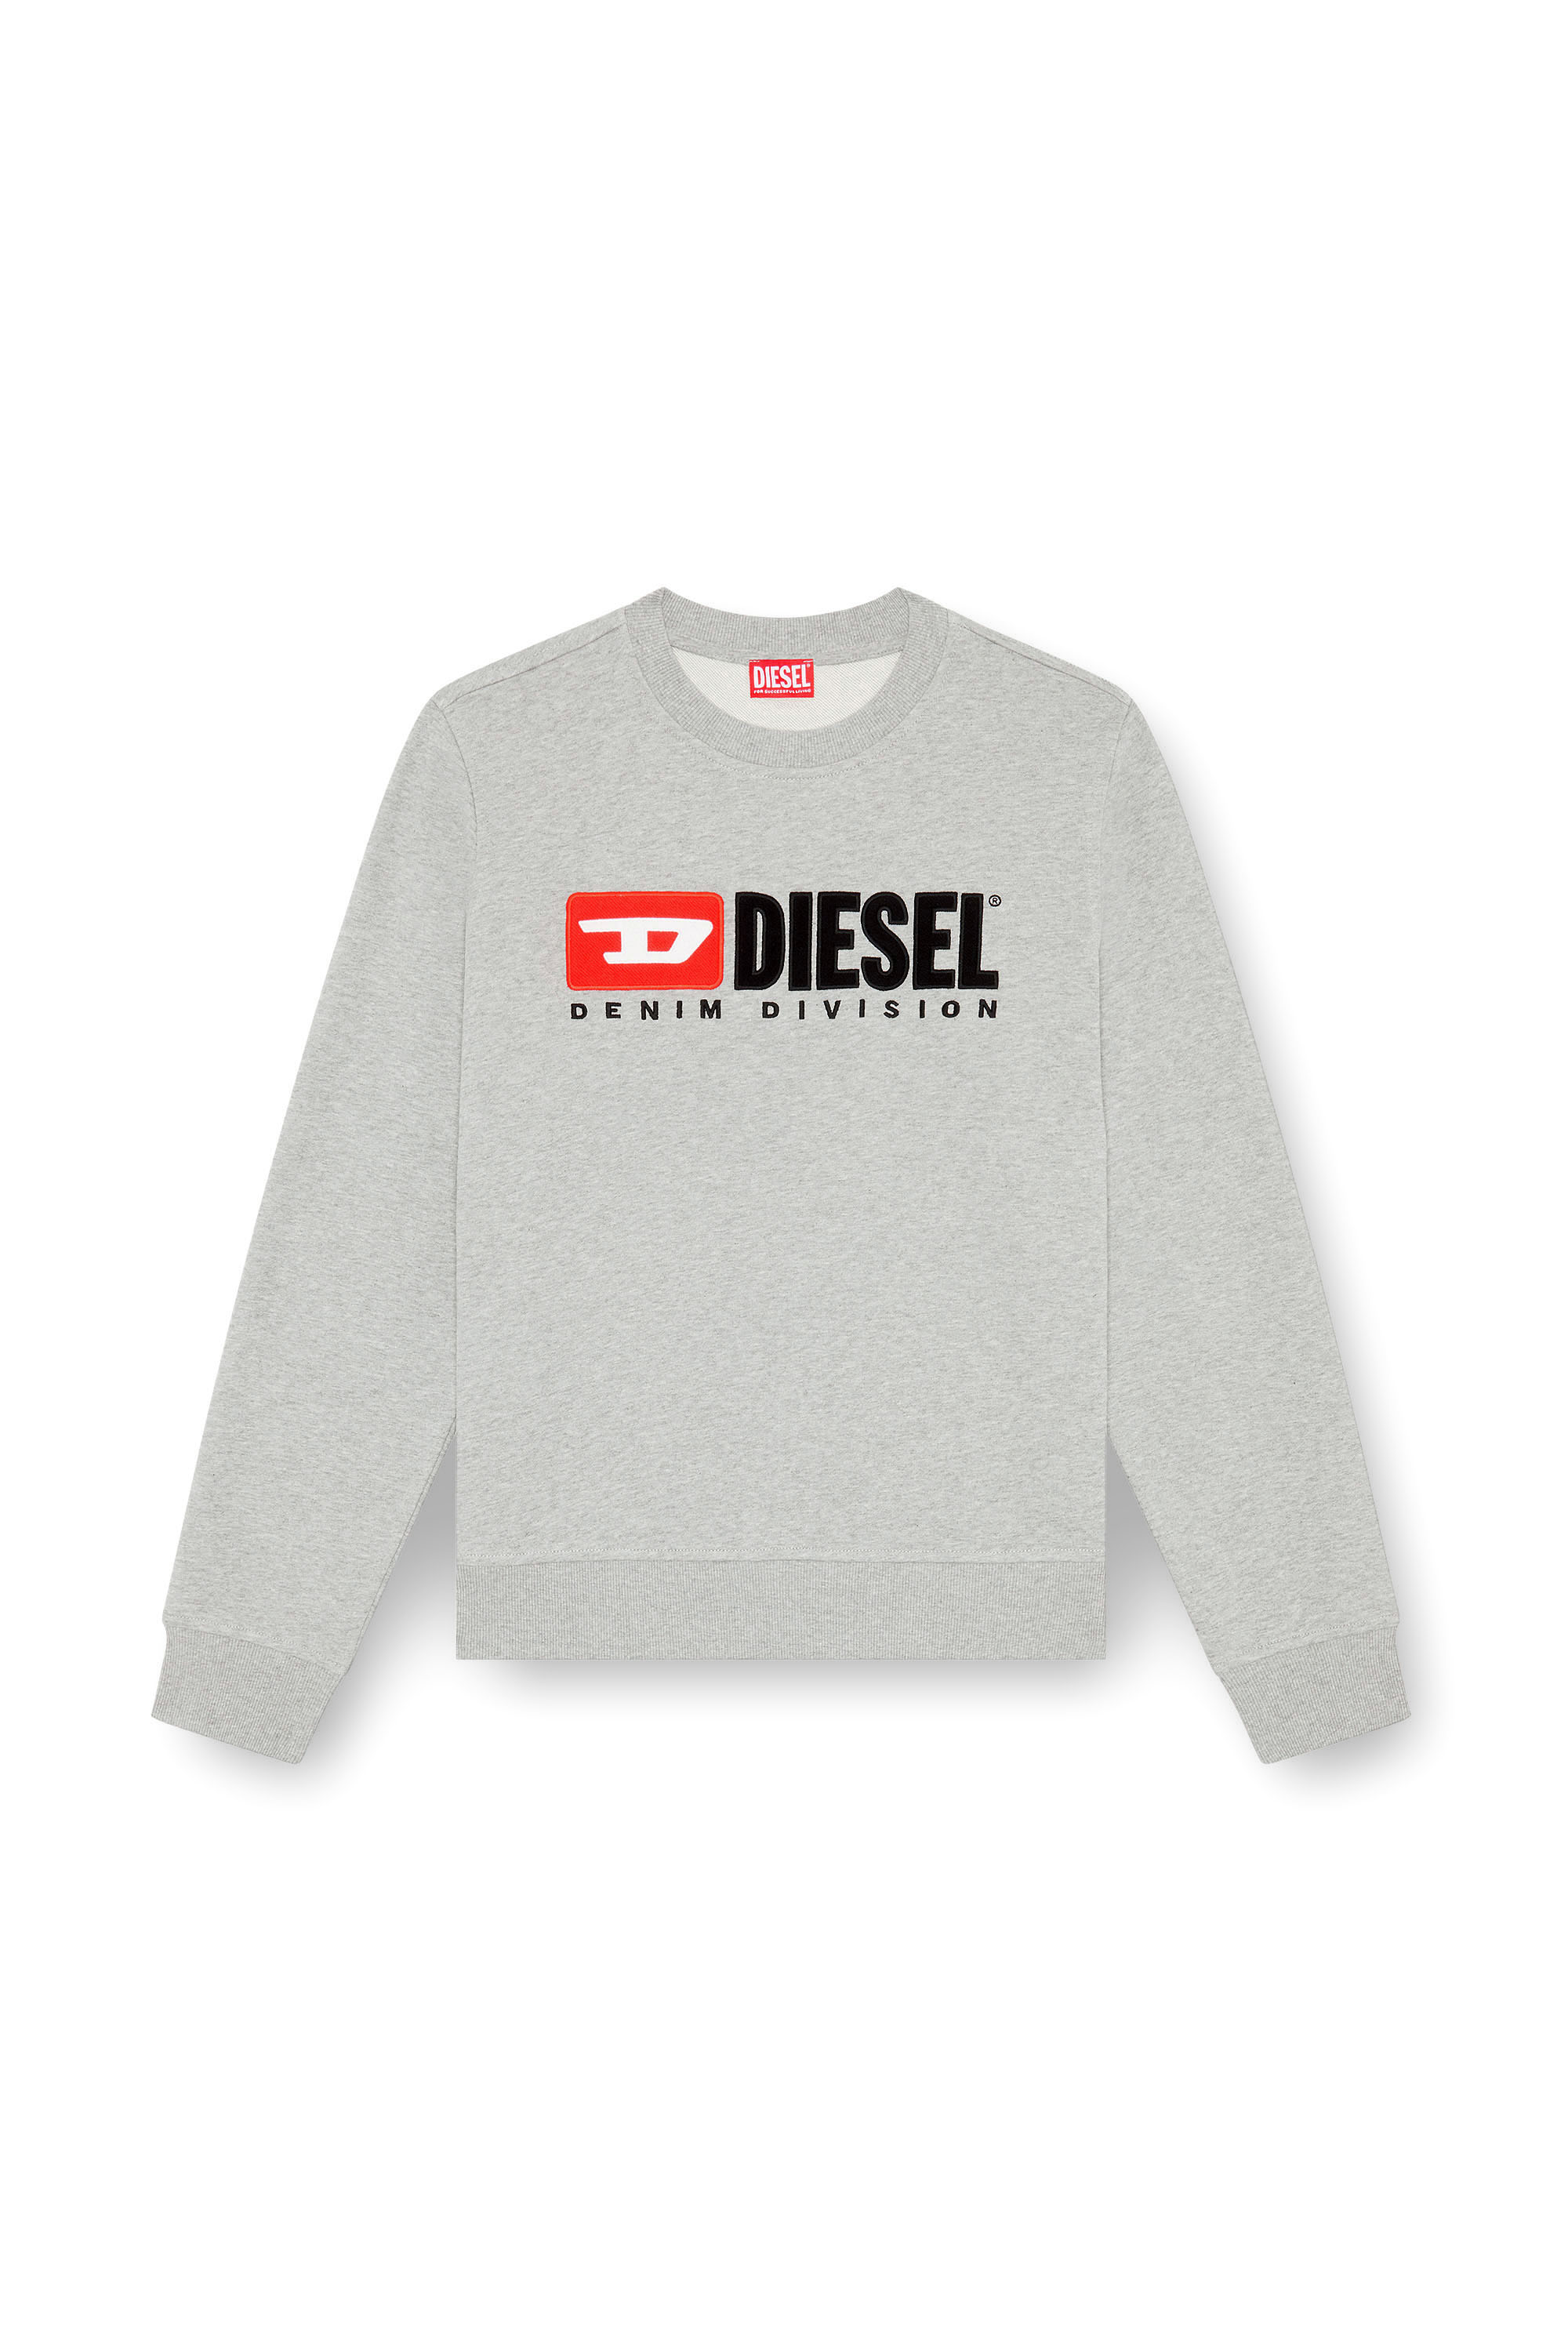 Diesel - S-BOXT-DIV, Herren Sweatshirt mit Denim Division-Logo in Grau - Image 3